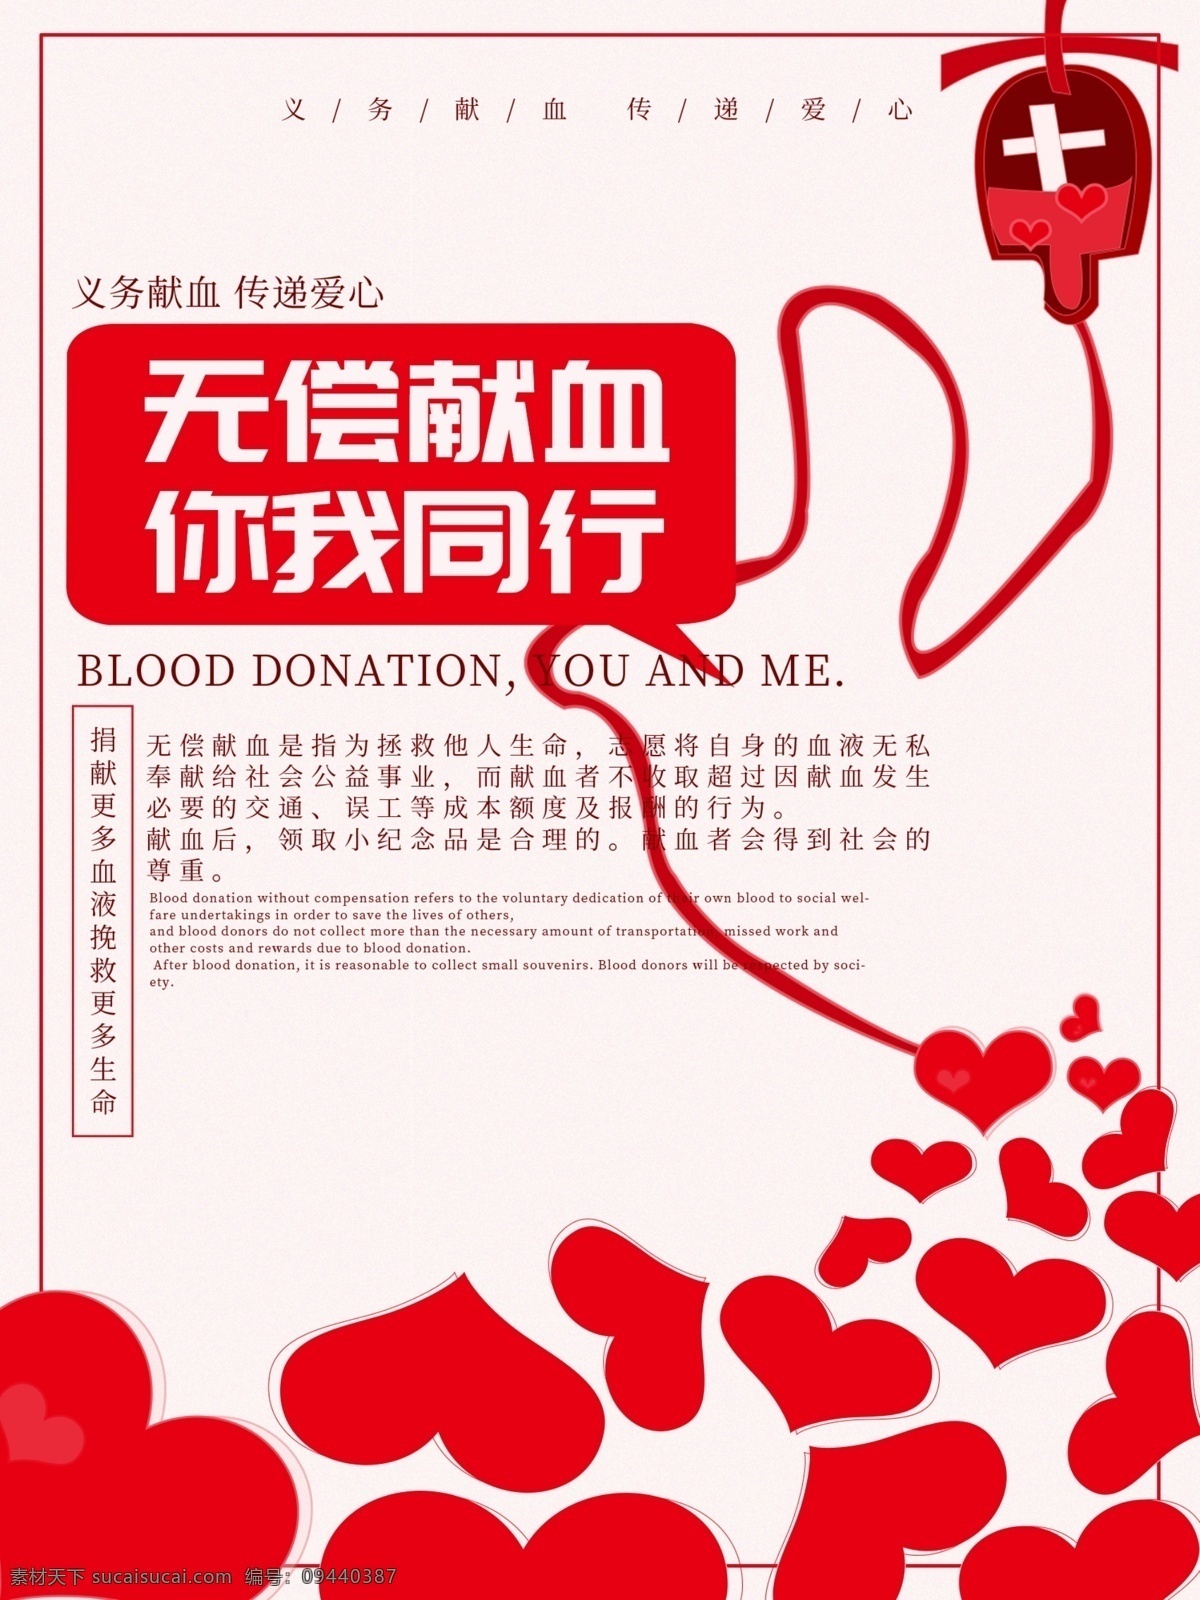 无偿献血 公益 海报 公益海报 世界鲜血日 献血 献血海报